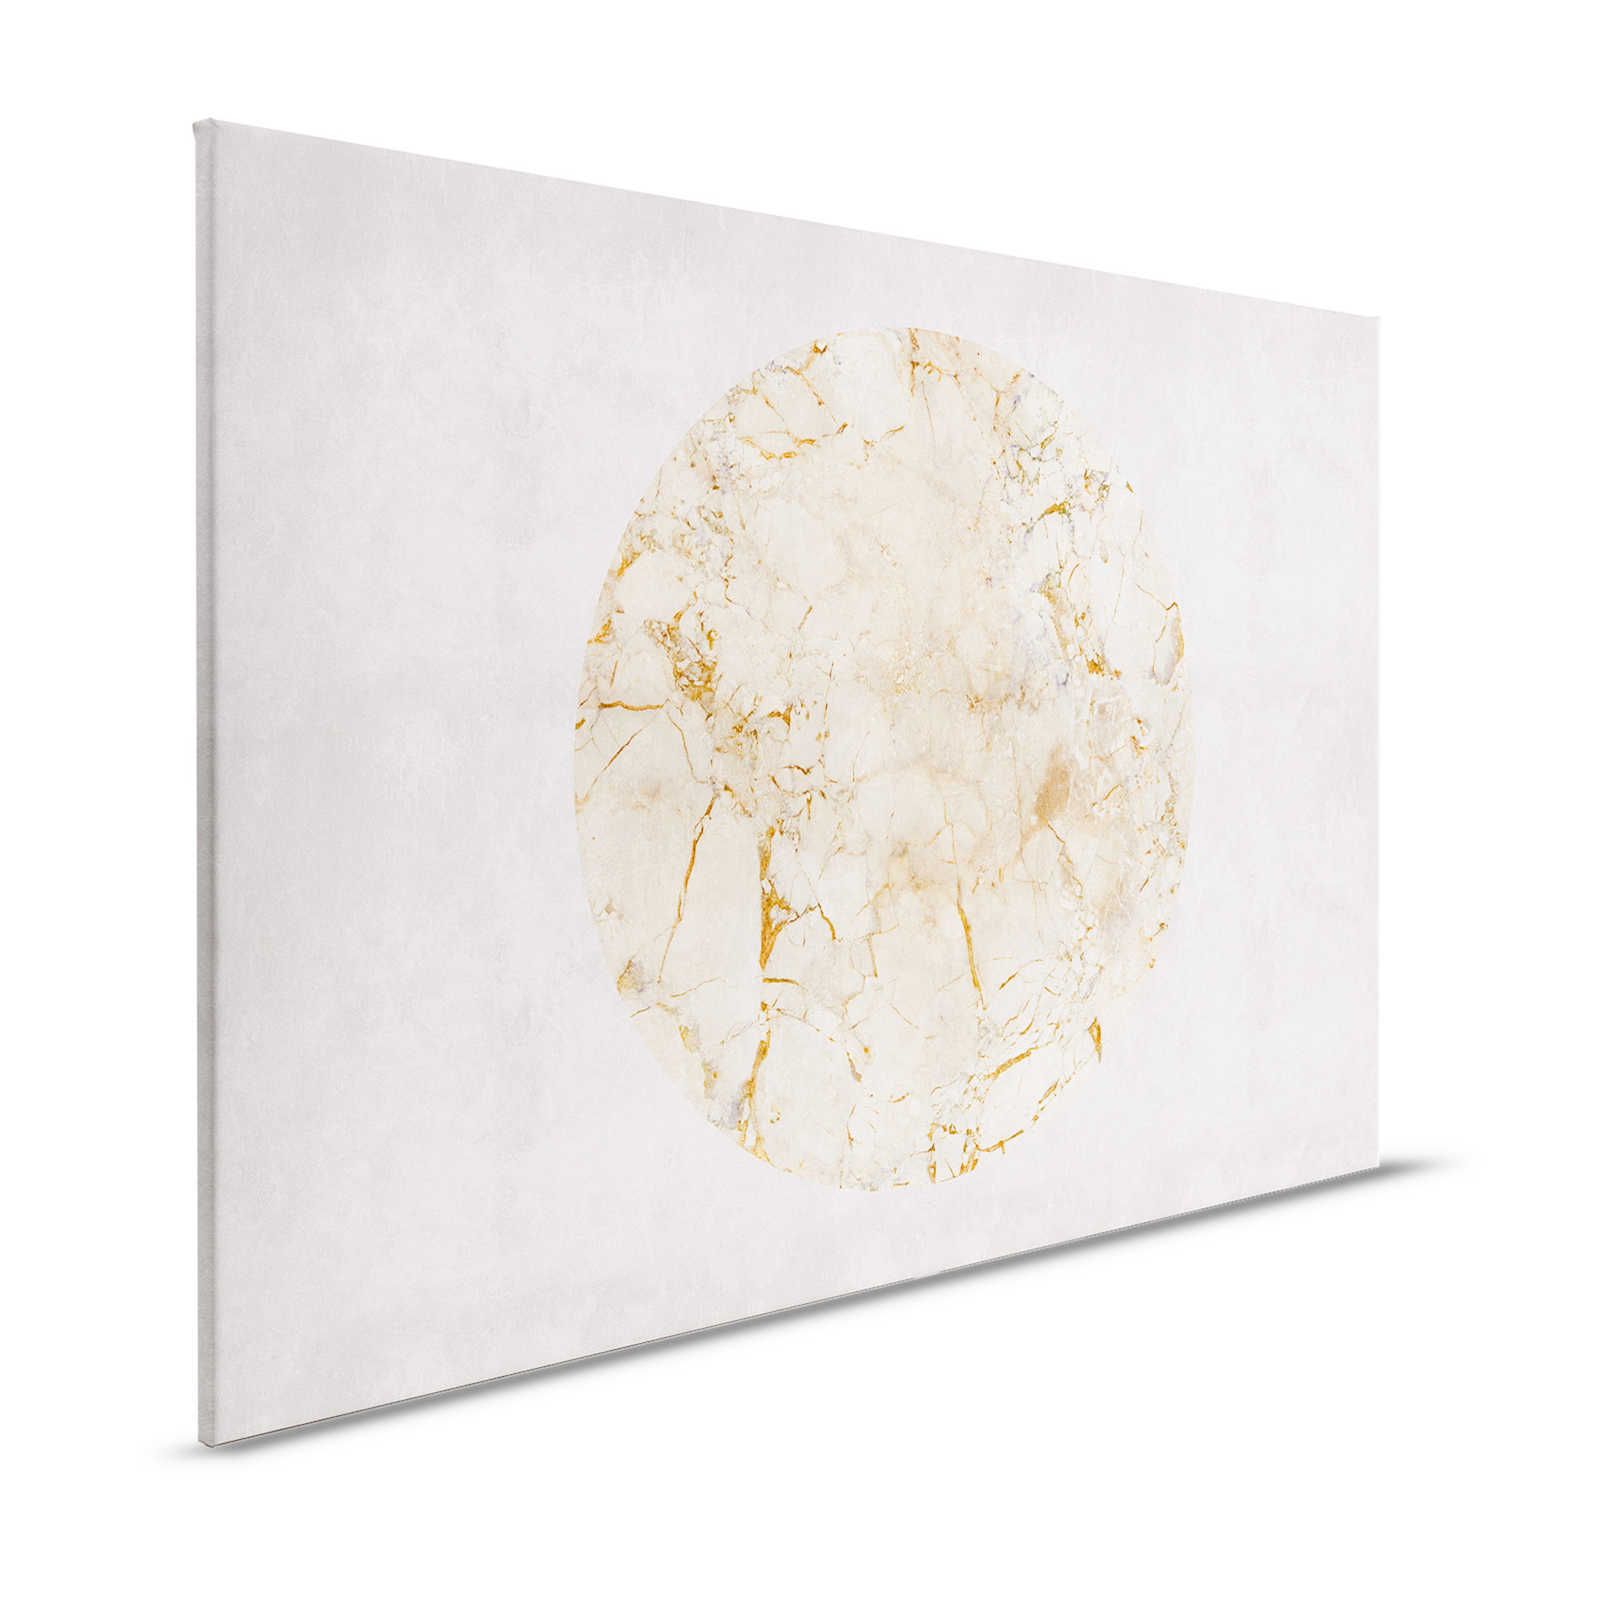 Venus 2 - Marble Canvas Painting Goudpatroon & Steenlook - 1.20 m x 0.80 m
